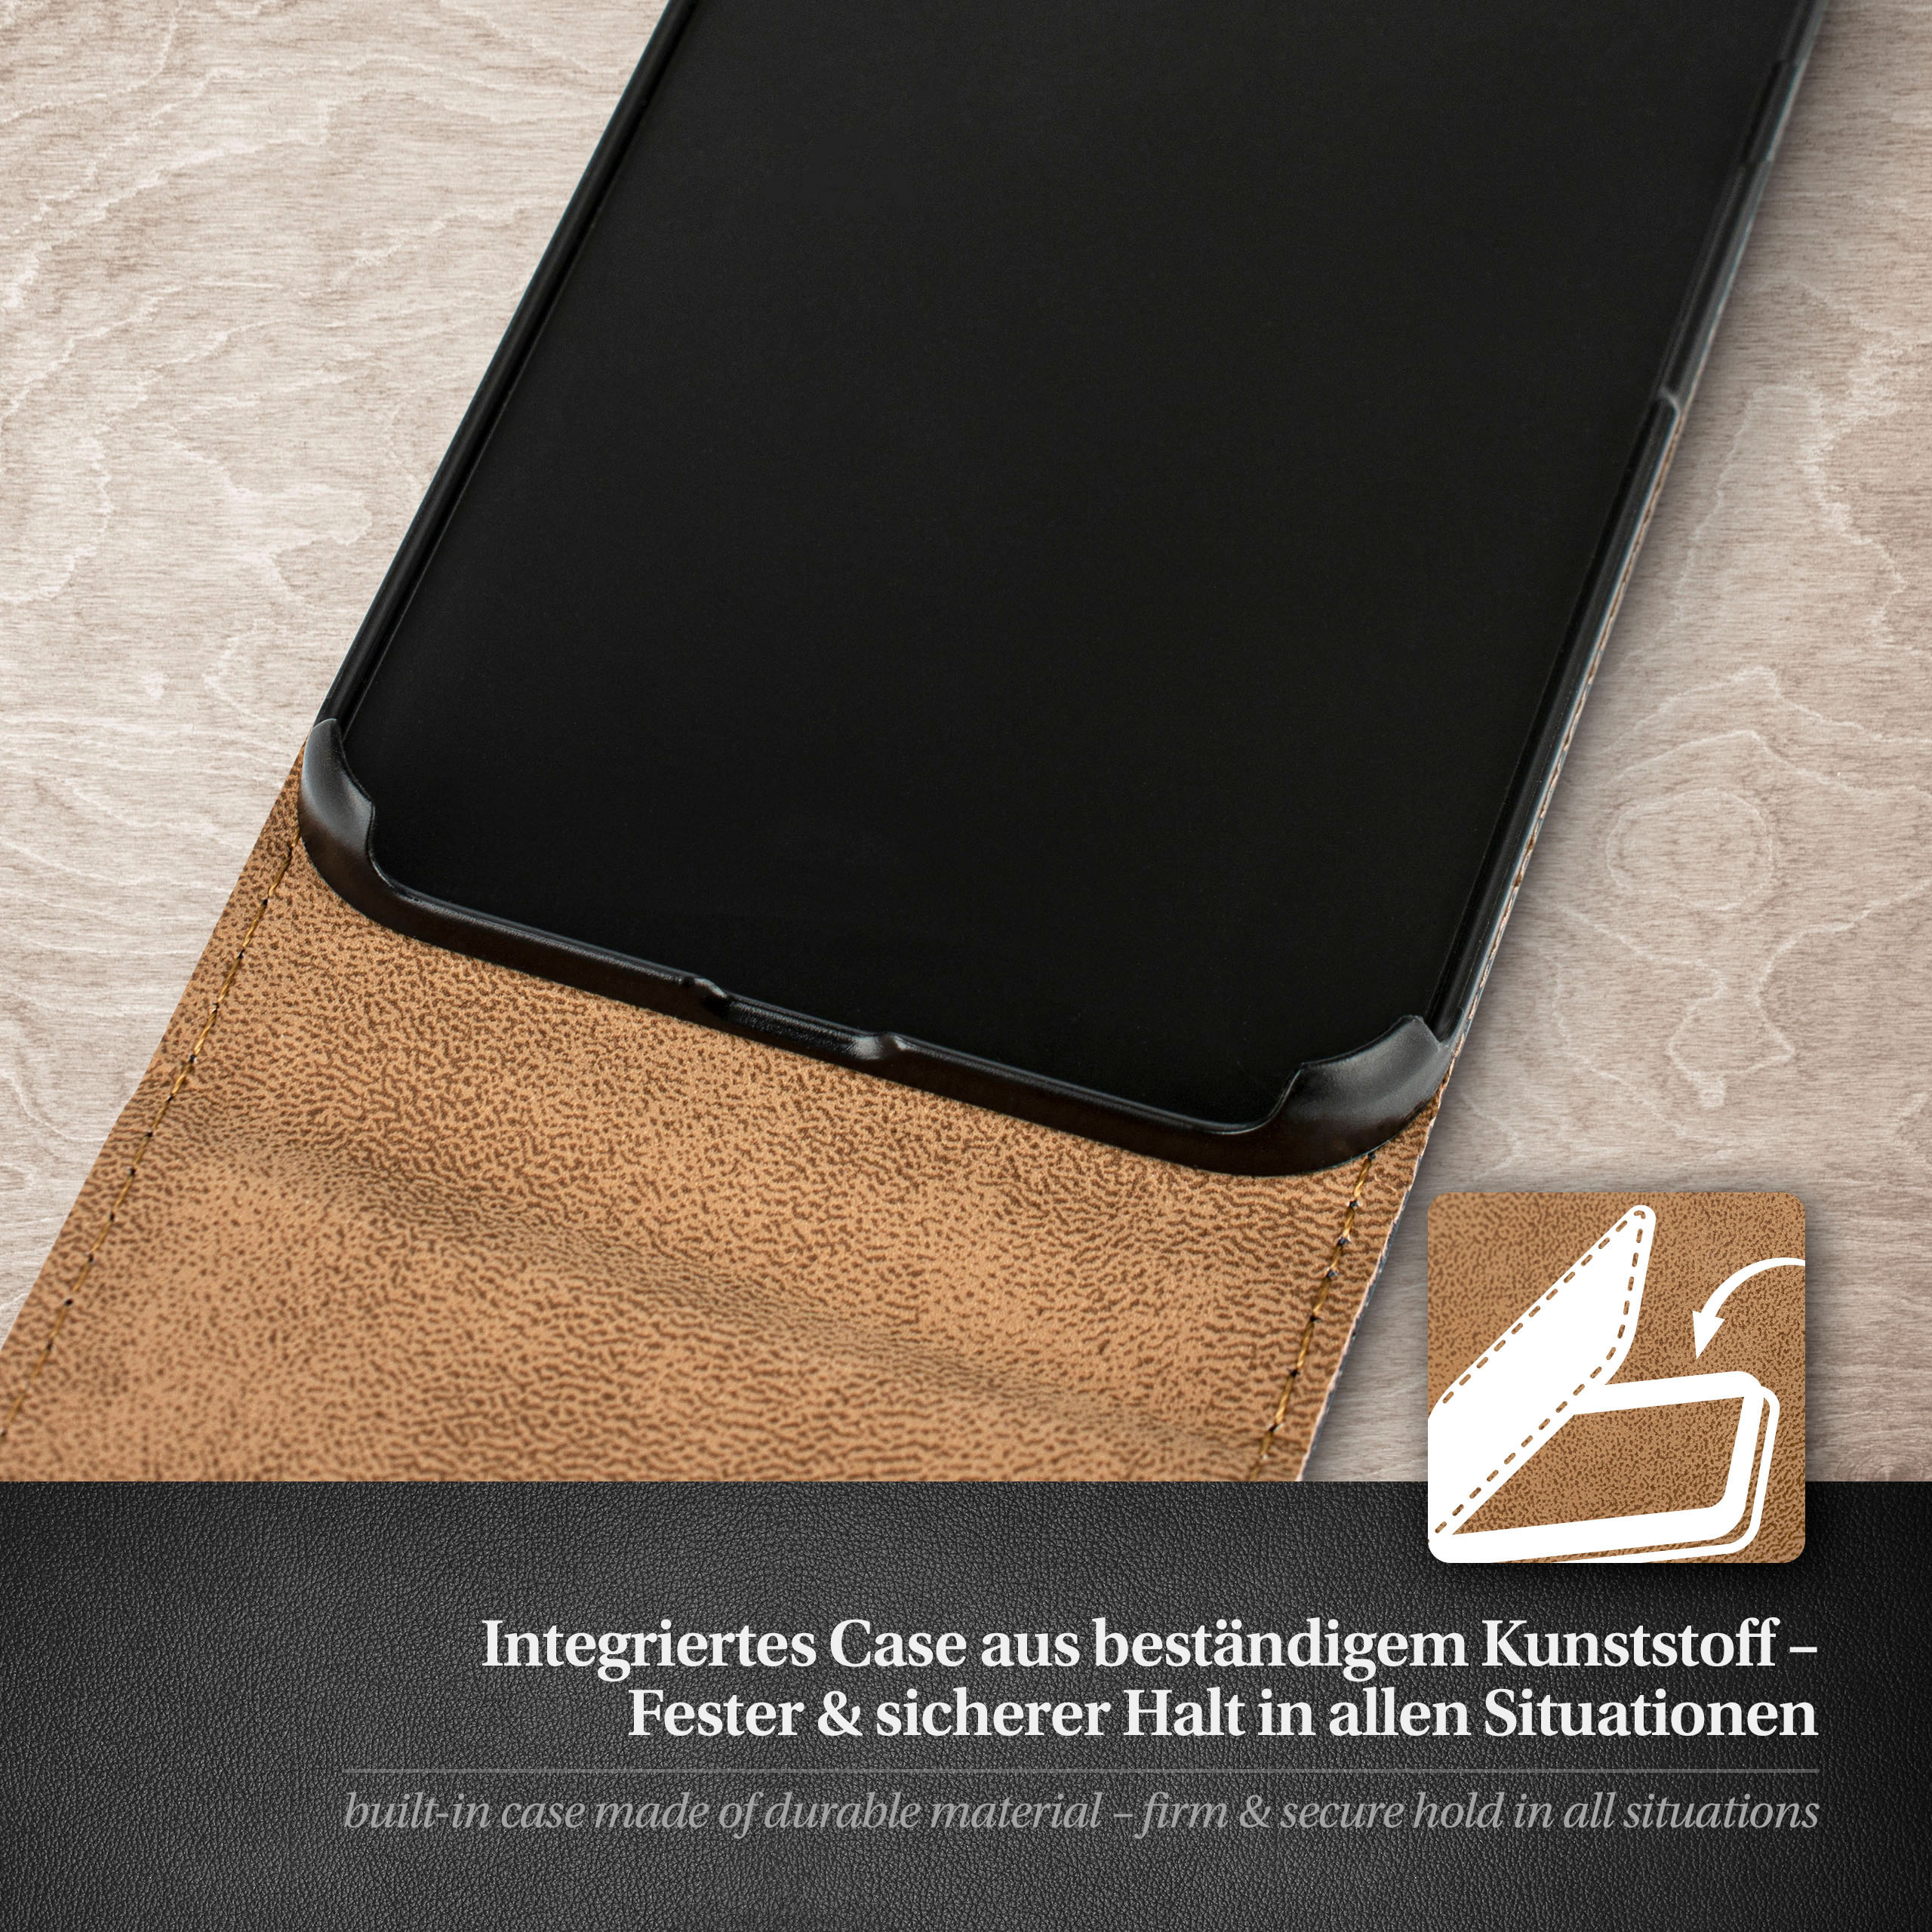 MOEX Flip Case, Plus iPhone Apple, 6s Cover, Berry-Fuchsia 6 Flip / Plus